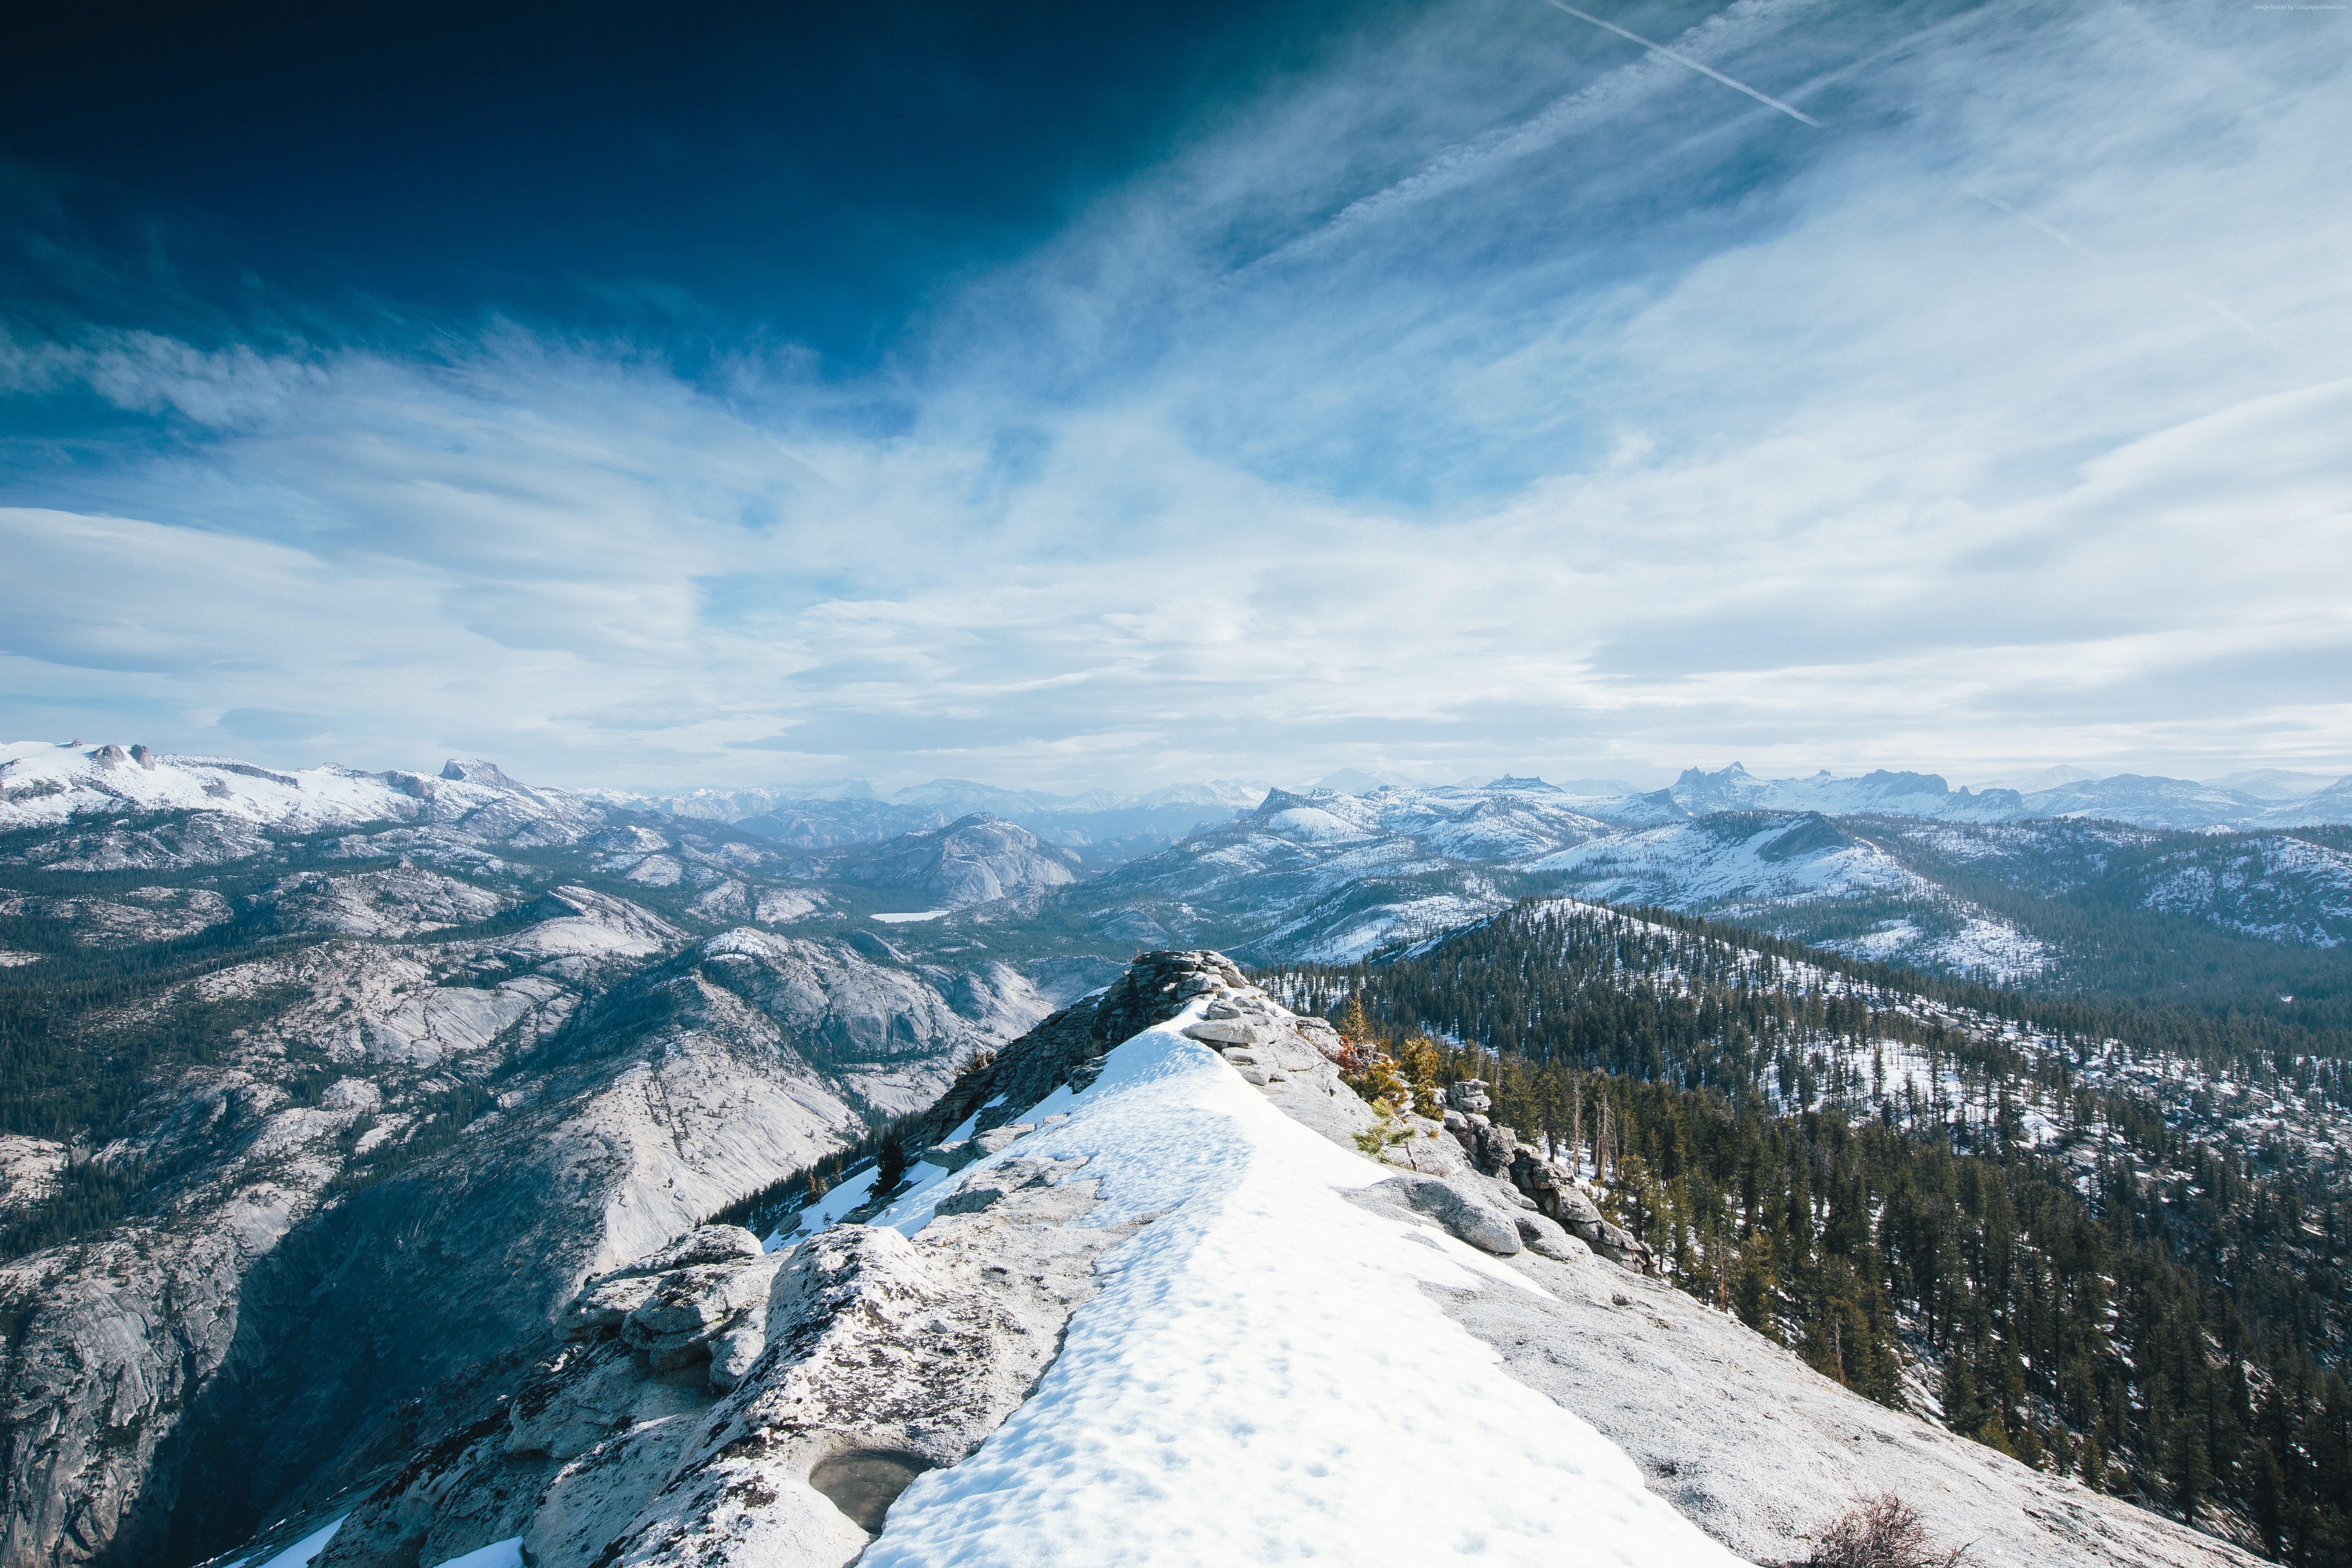 Yosemite luôn là điểm đến yêu thích của những tín đồ phượt, những người thích khám phá và thưởng ngoạn vẻ đẹp của thiên nhiên. Điểm đến này nổi tiếng với quy mô của mình và những phong cảnh thiên nhiên đẹp như trong cổ tích. Hãy cùng chúng tôi khám phá thiên đường thiên nhiên tuyệt vời này.